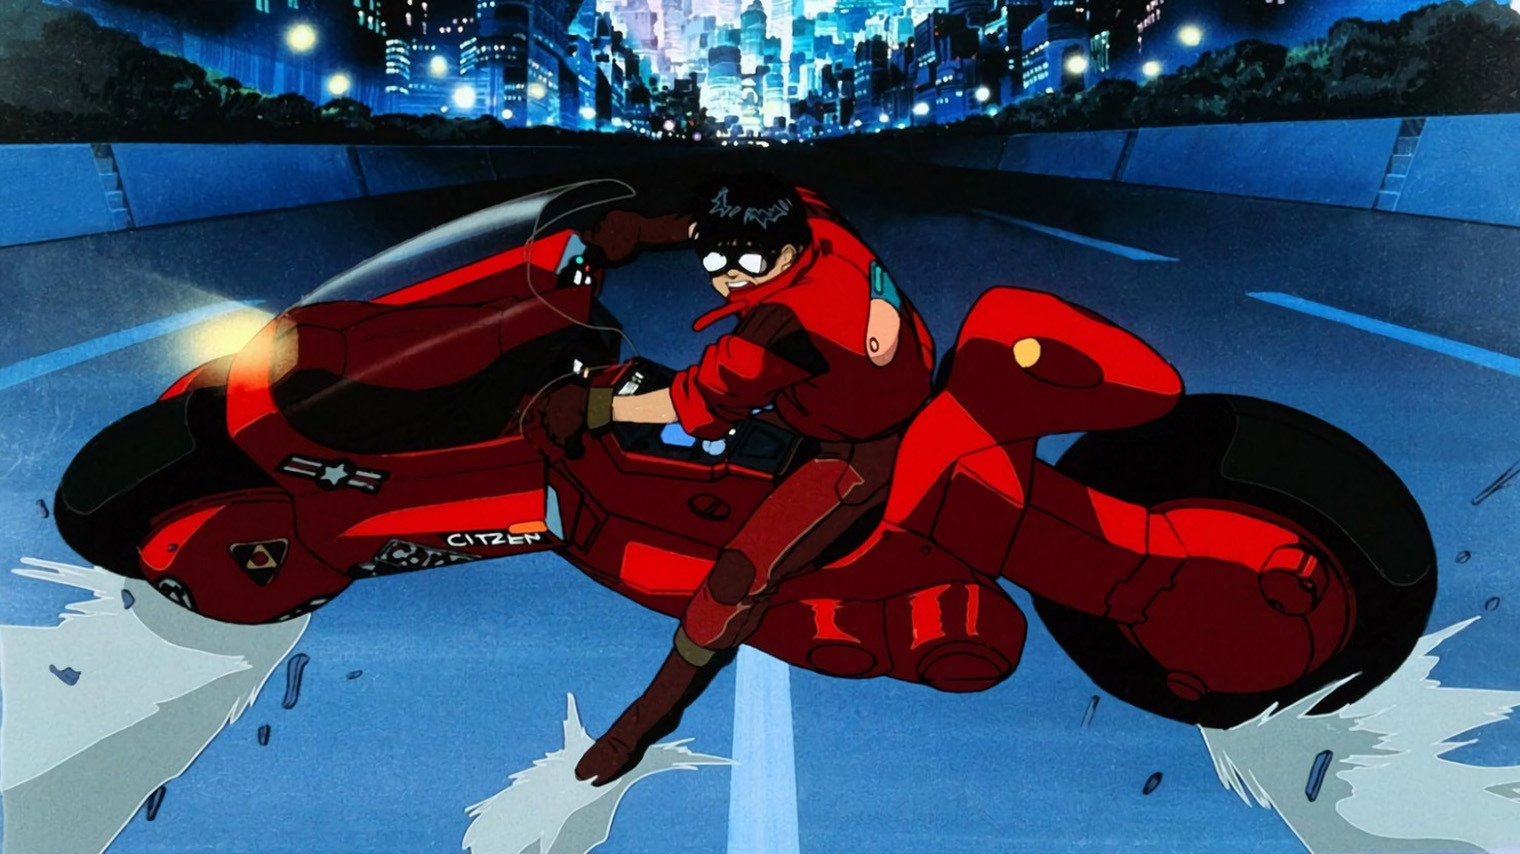 Сцена, где герой на высокой скорости останавливает красный мотоцикл, стала одной из самых цитируемых в анимации. Ее можно увидеть в «Черепашках-ниндзя», «Бэтмене», «Кармен Сандиего» и десятках аниме — а также в фильме «Нет». Источник: TMS Entertainment